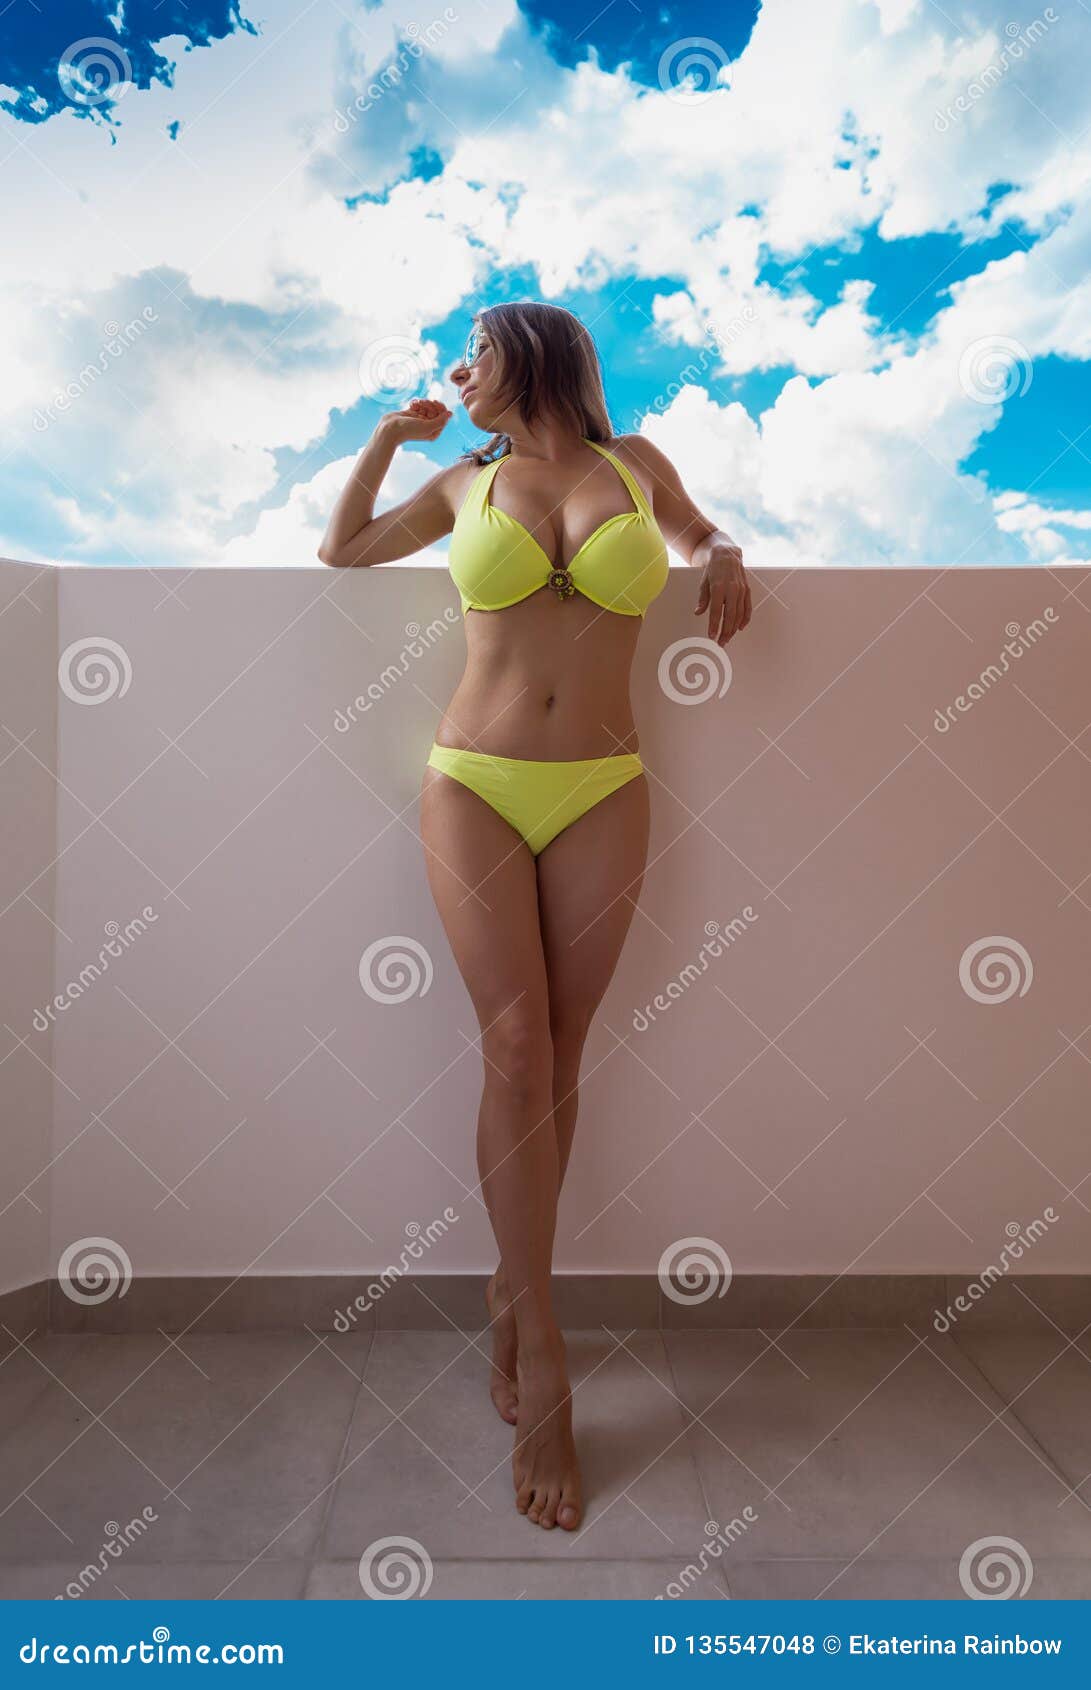 Yellow Bikini In Sea Stock Photo Image Of Female Island